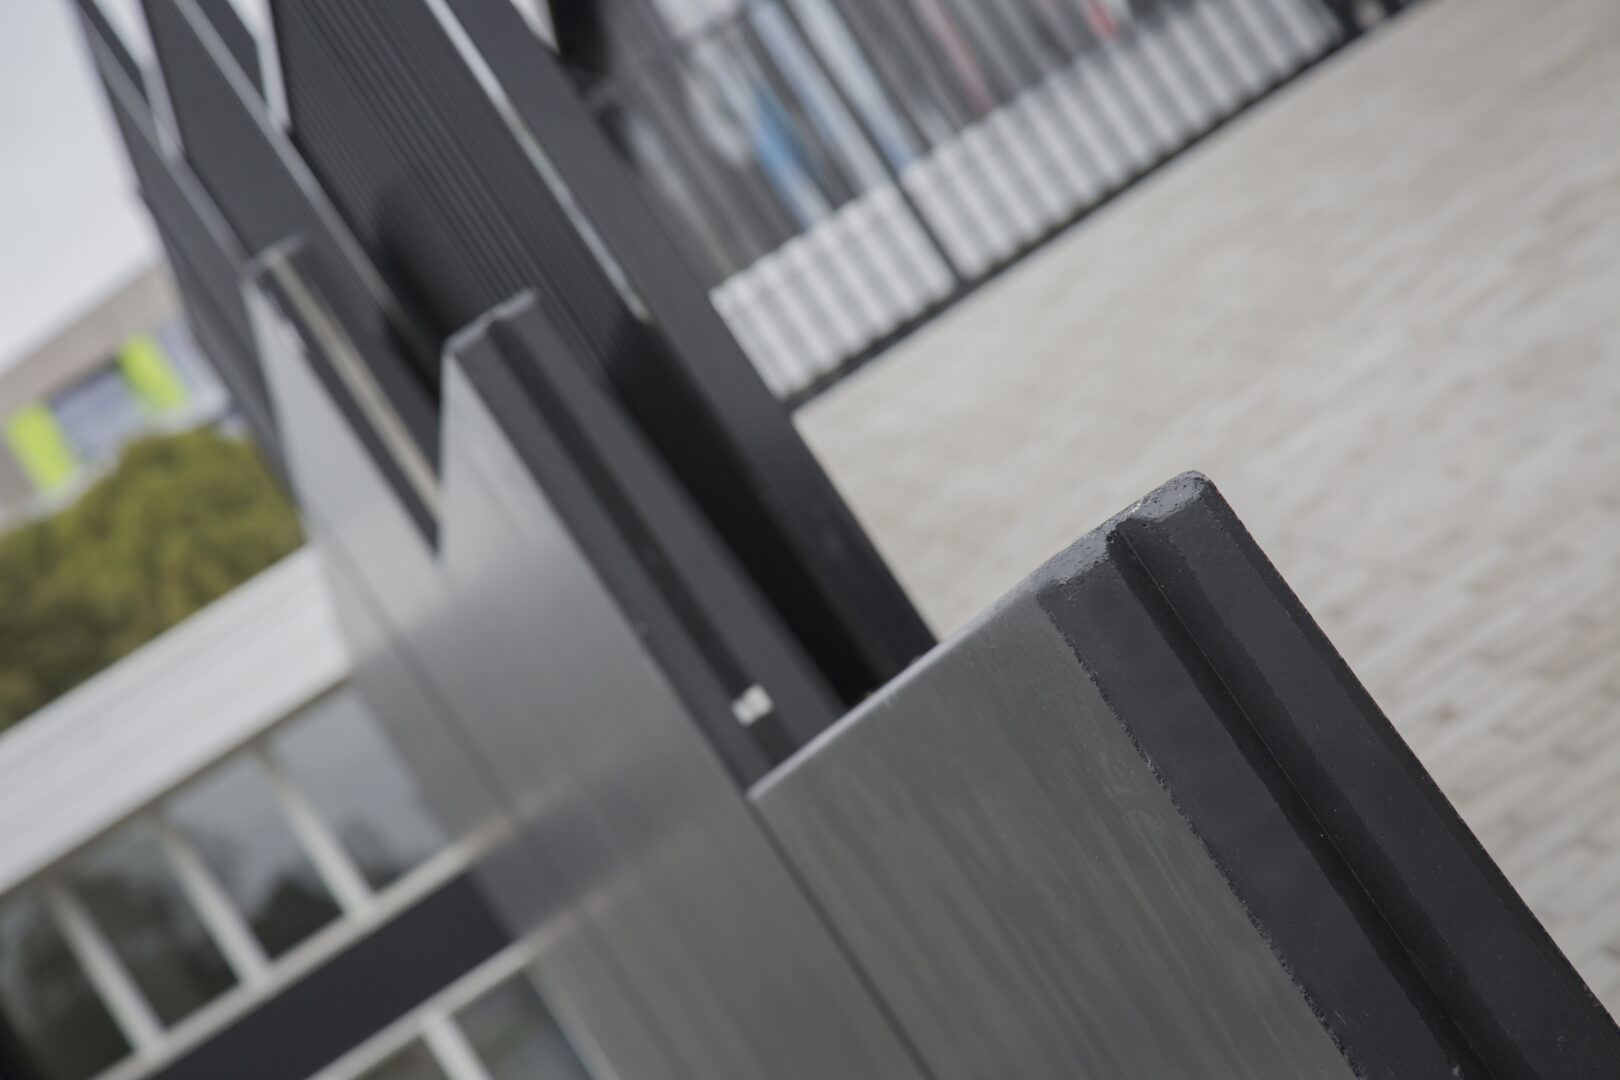 Bosch Beton - Antraciet keerwanden bij SportsCentre FBK Stadion in Hengelo